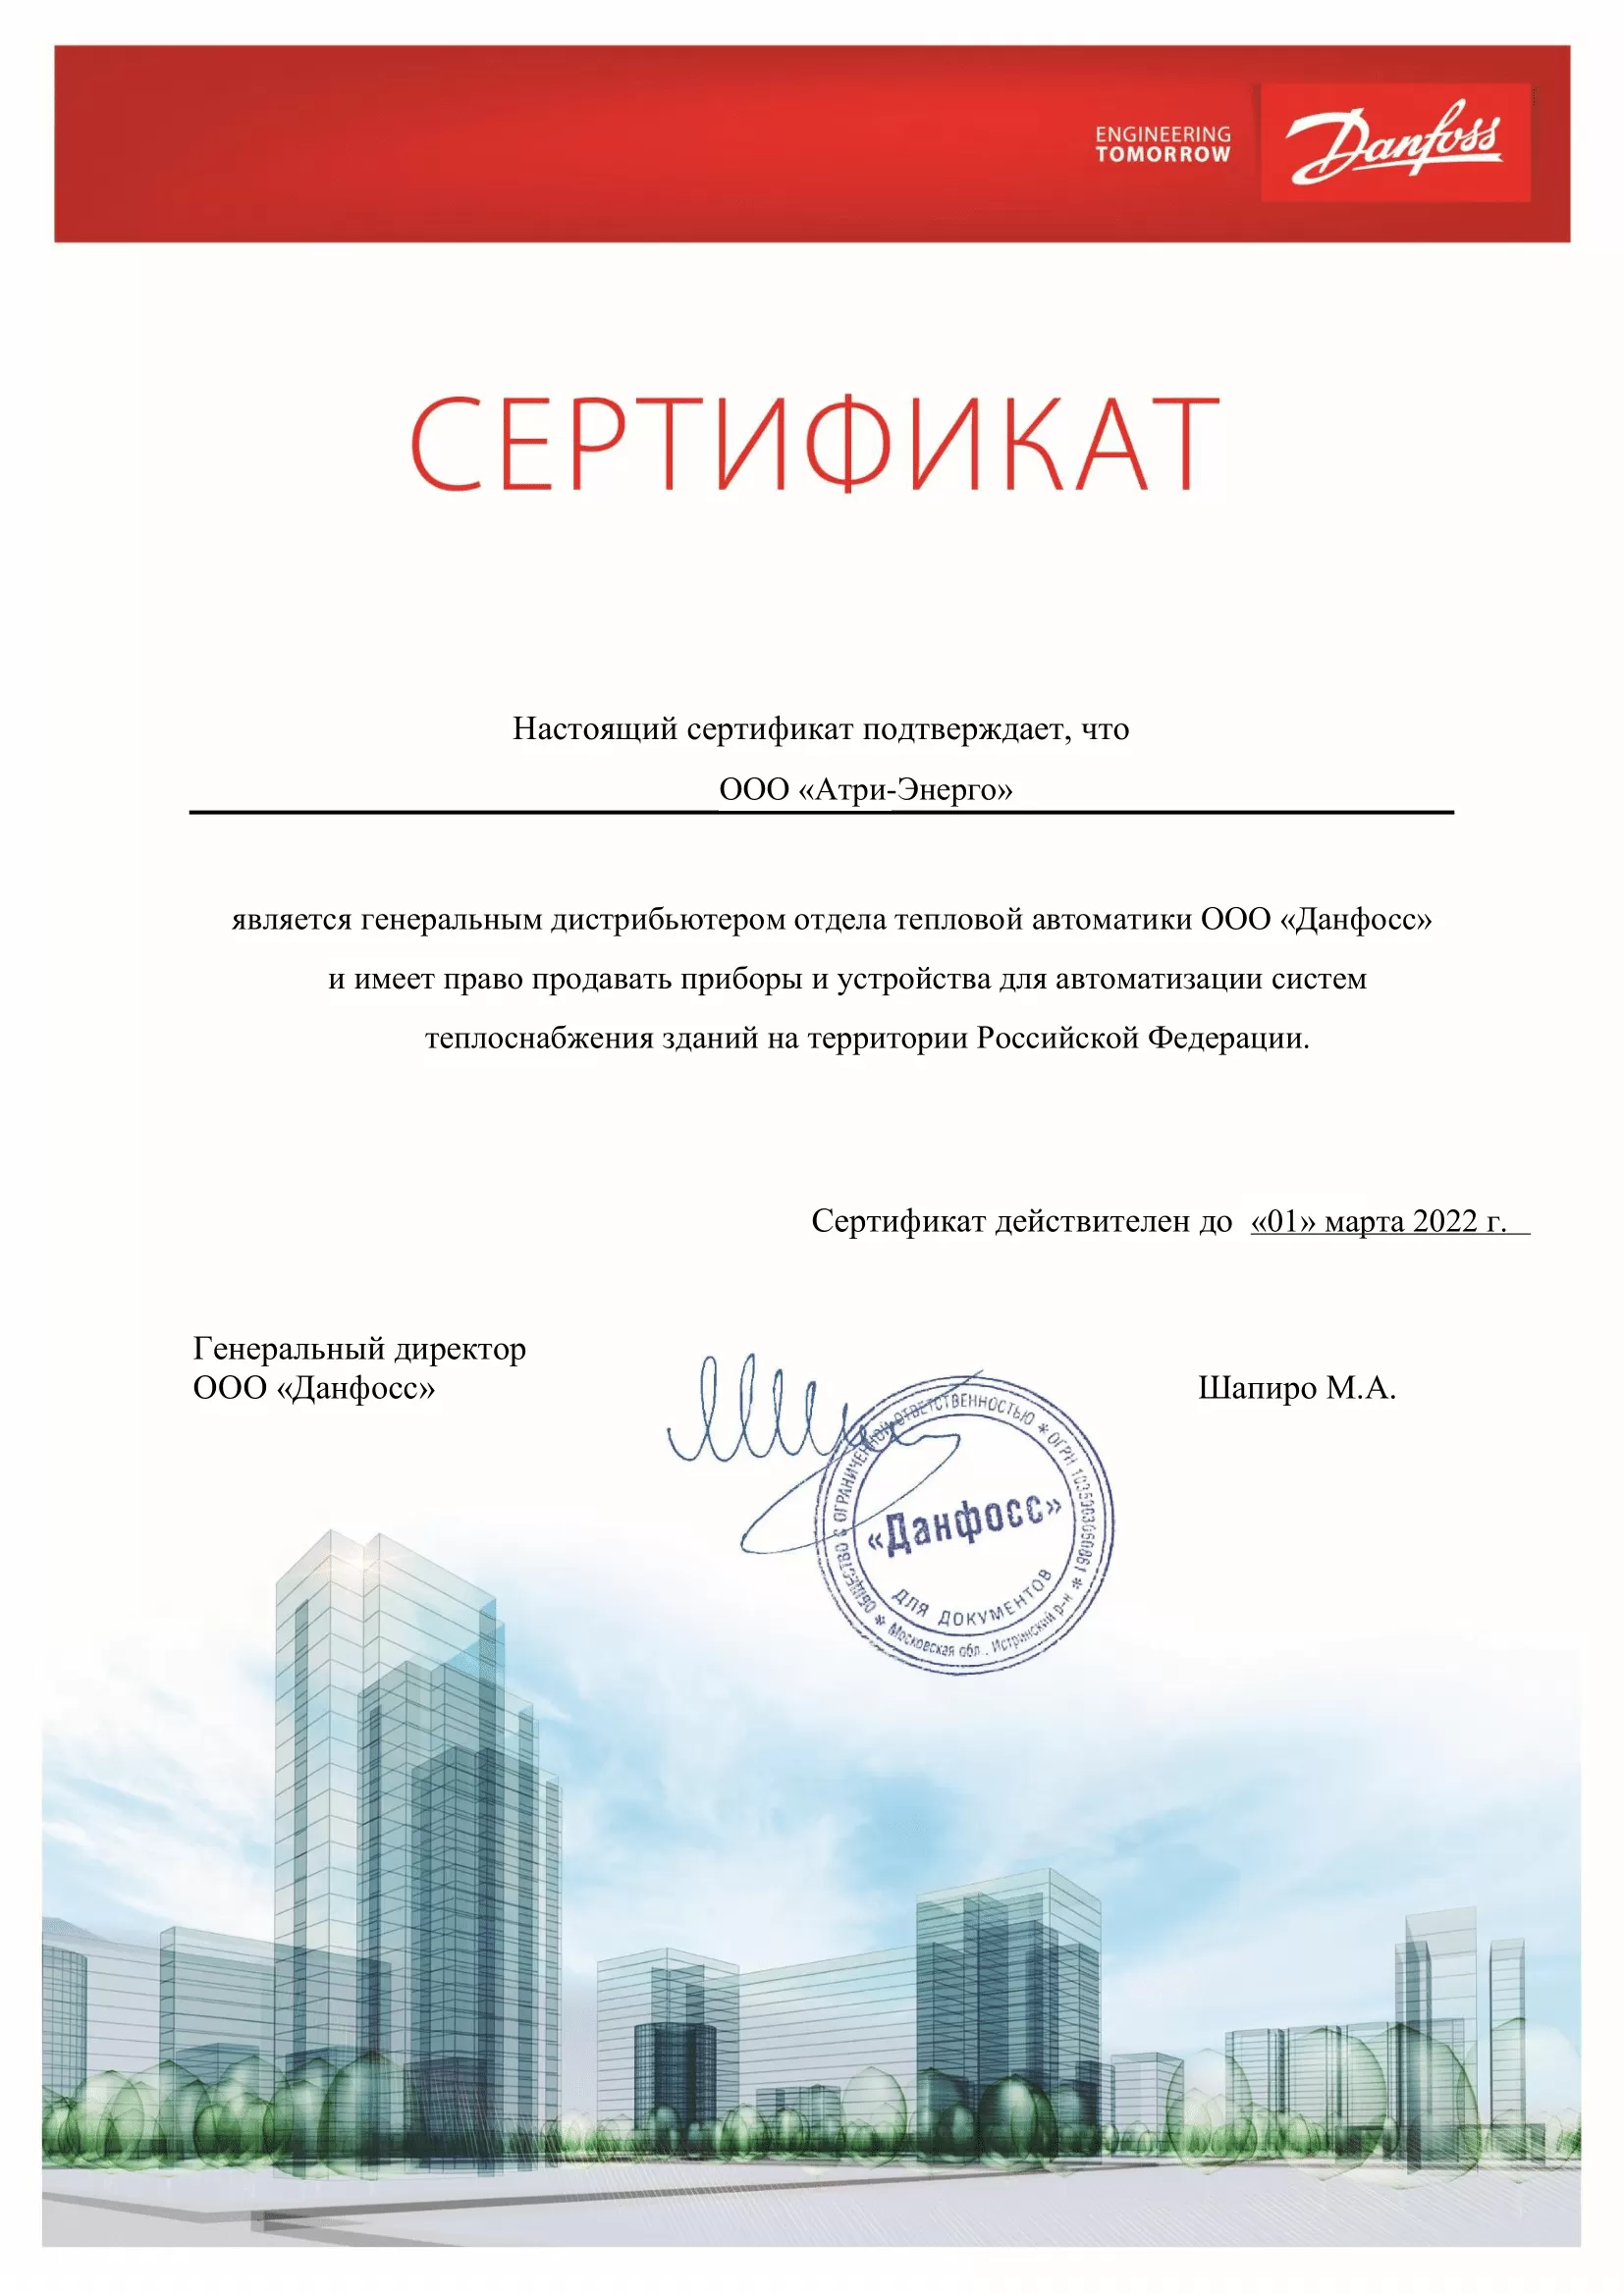 Сертификат генерального дистрибьютора отдела тепловой автоматики Данфосс